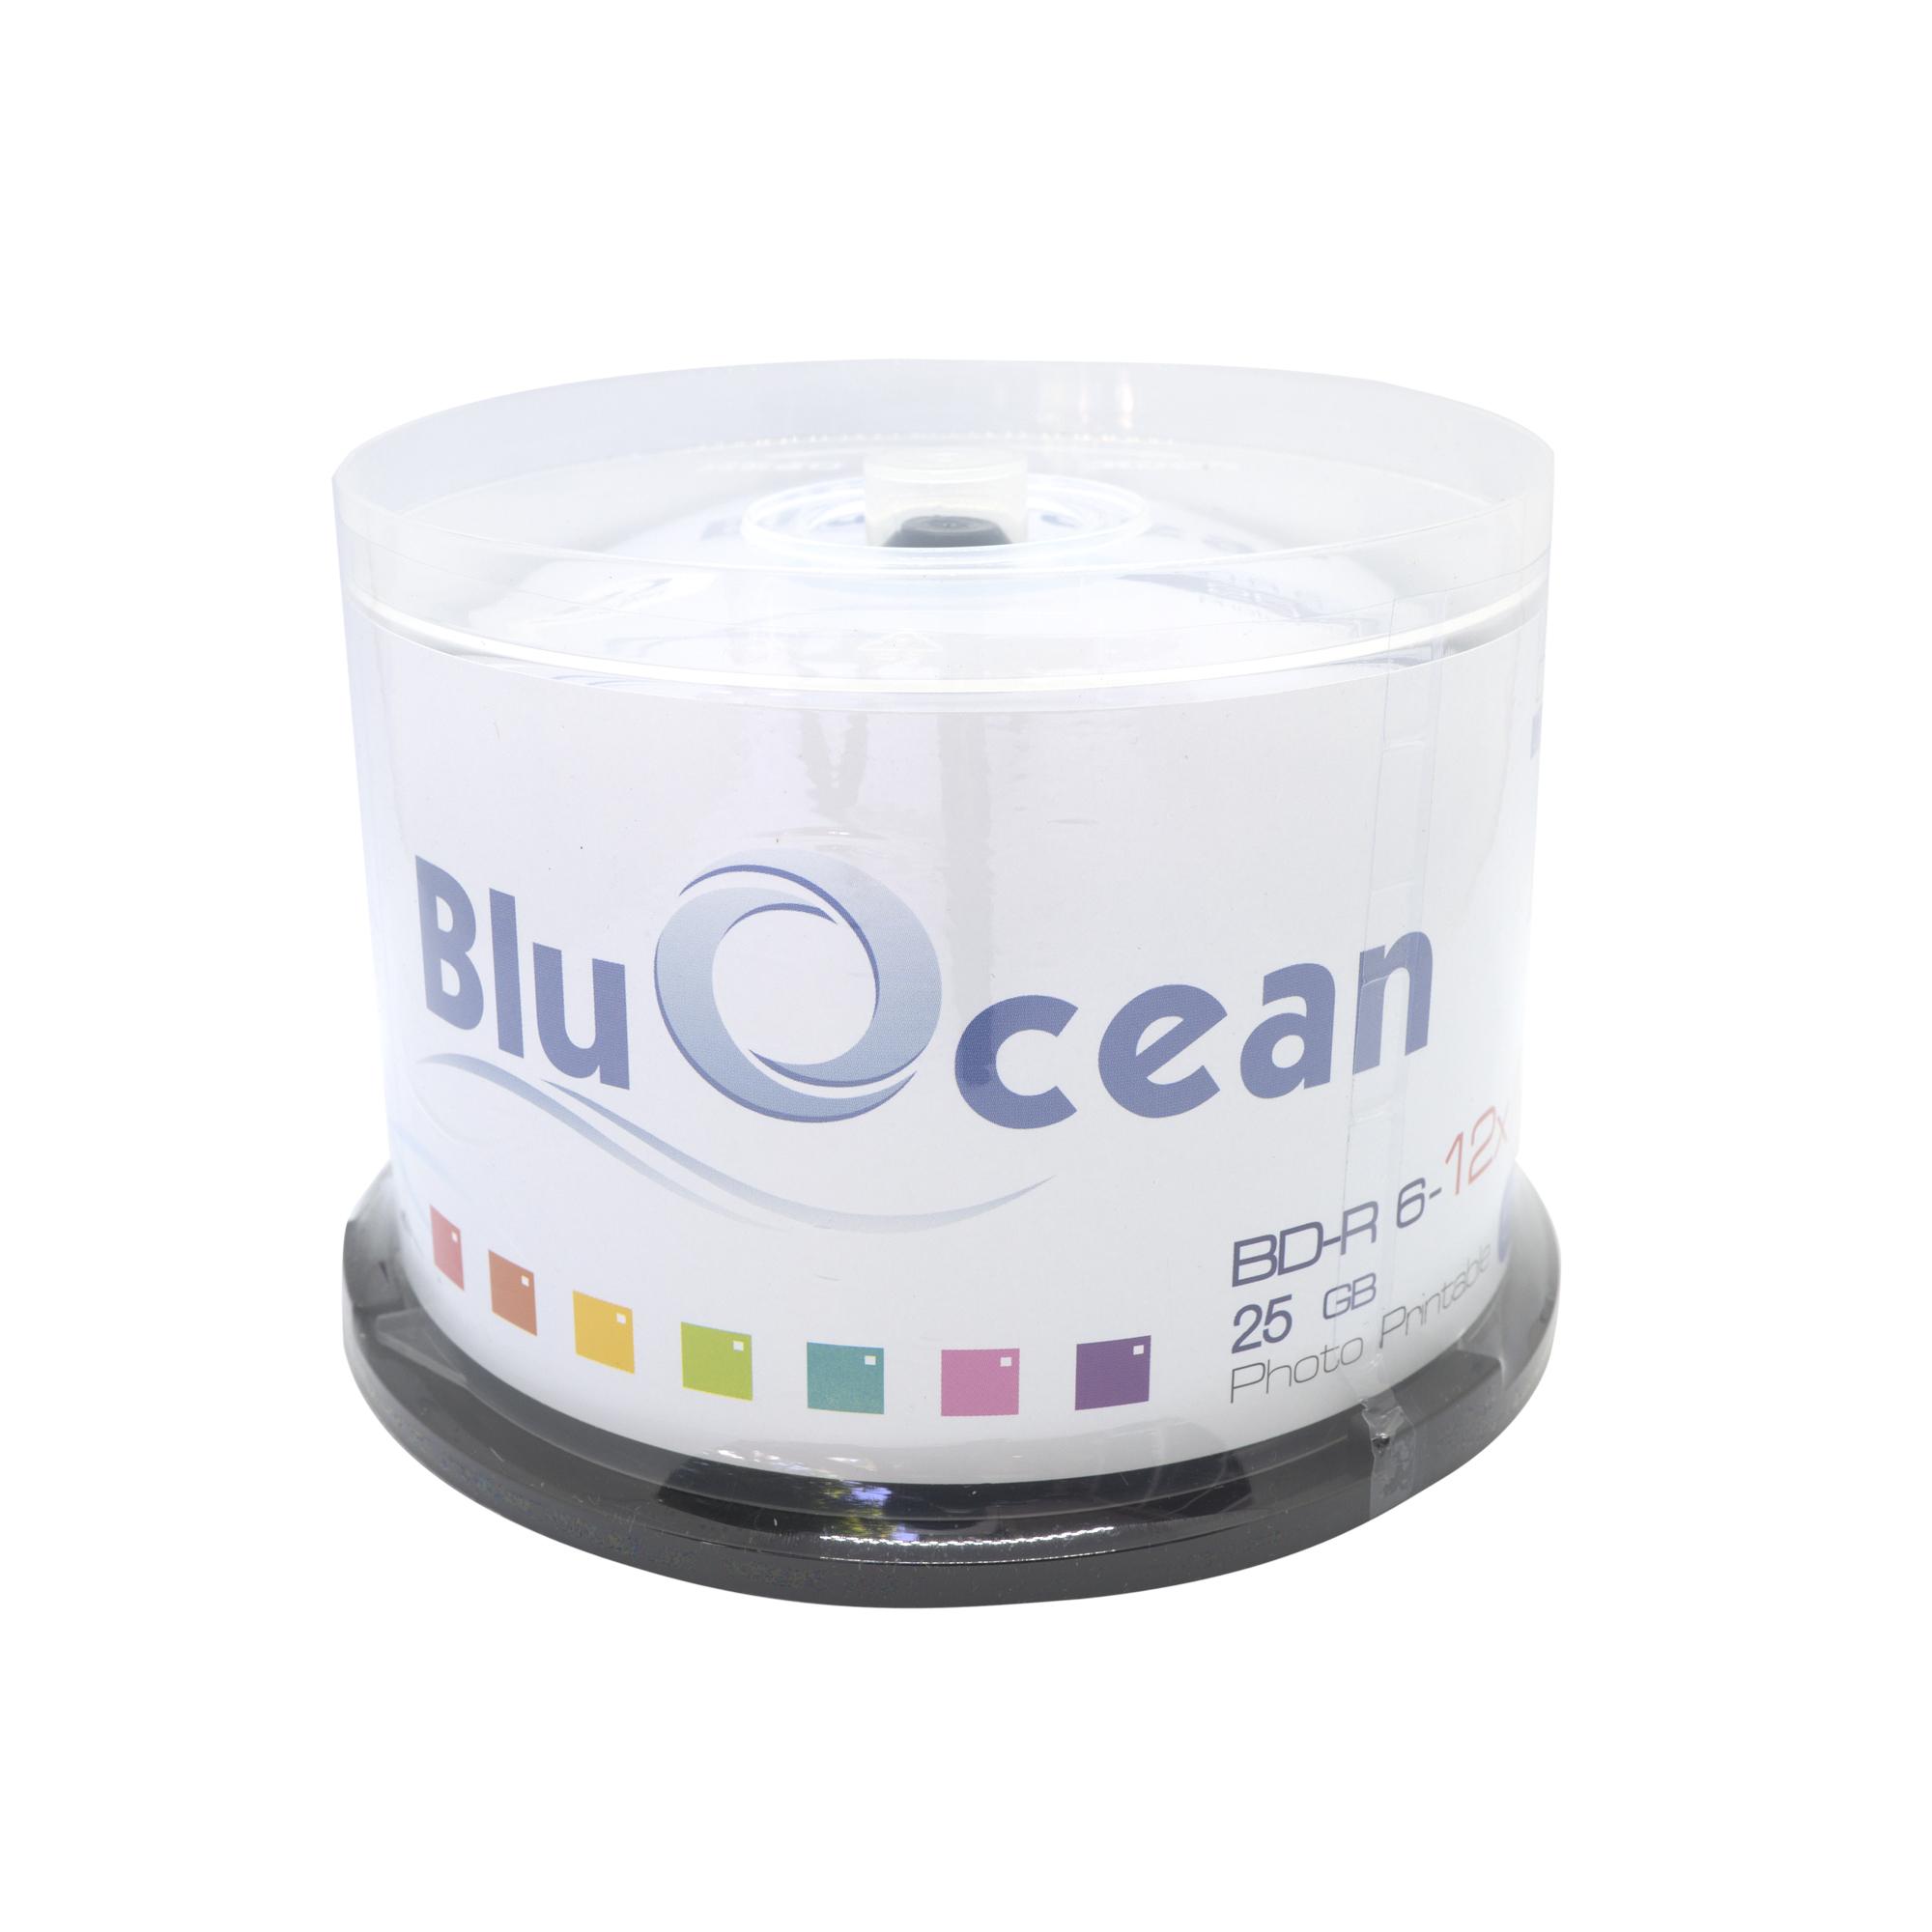 งานพรีเมี่ยม Bluocean Bd-R 25 Gb แผ่นเปล่าบลูเรย์ 6x Bluray White Inkjet หน้าปรินท์ได้ แพค 50 แผ่น. 